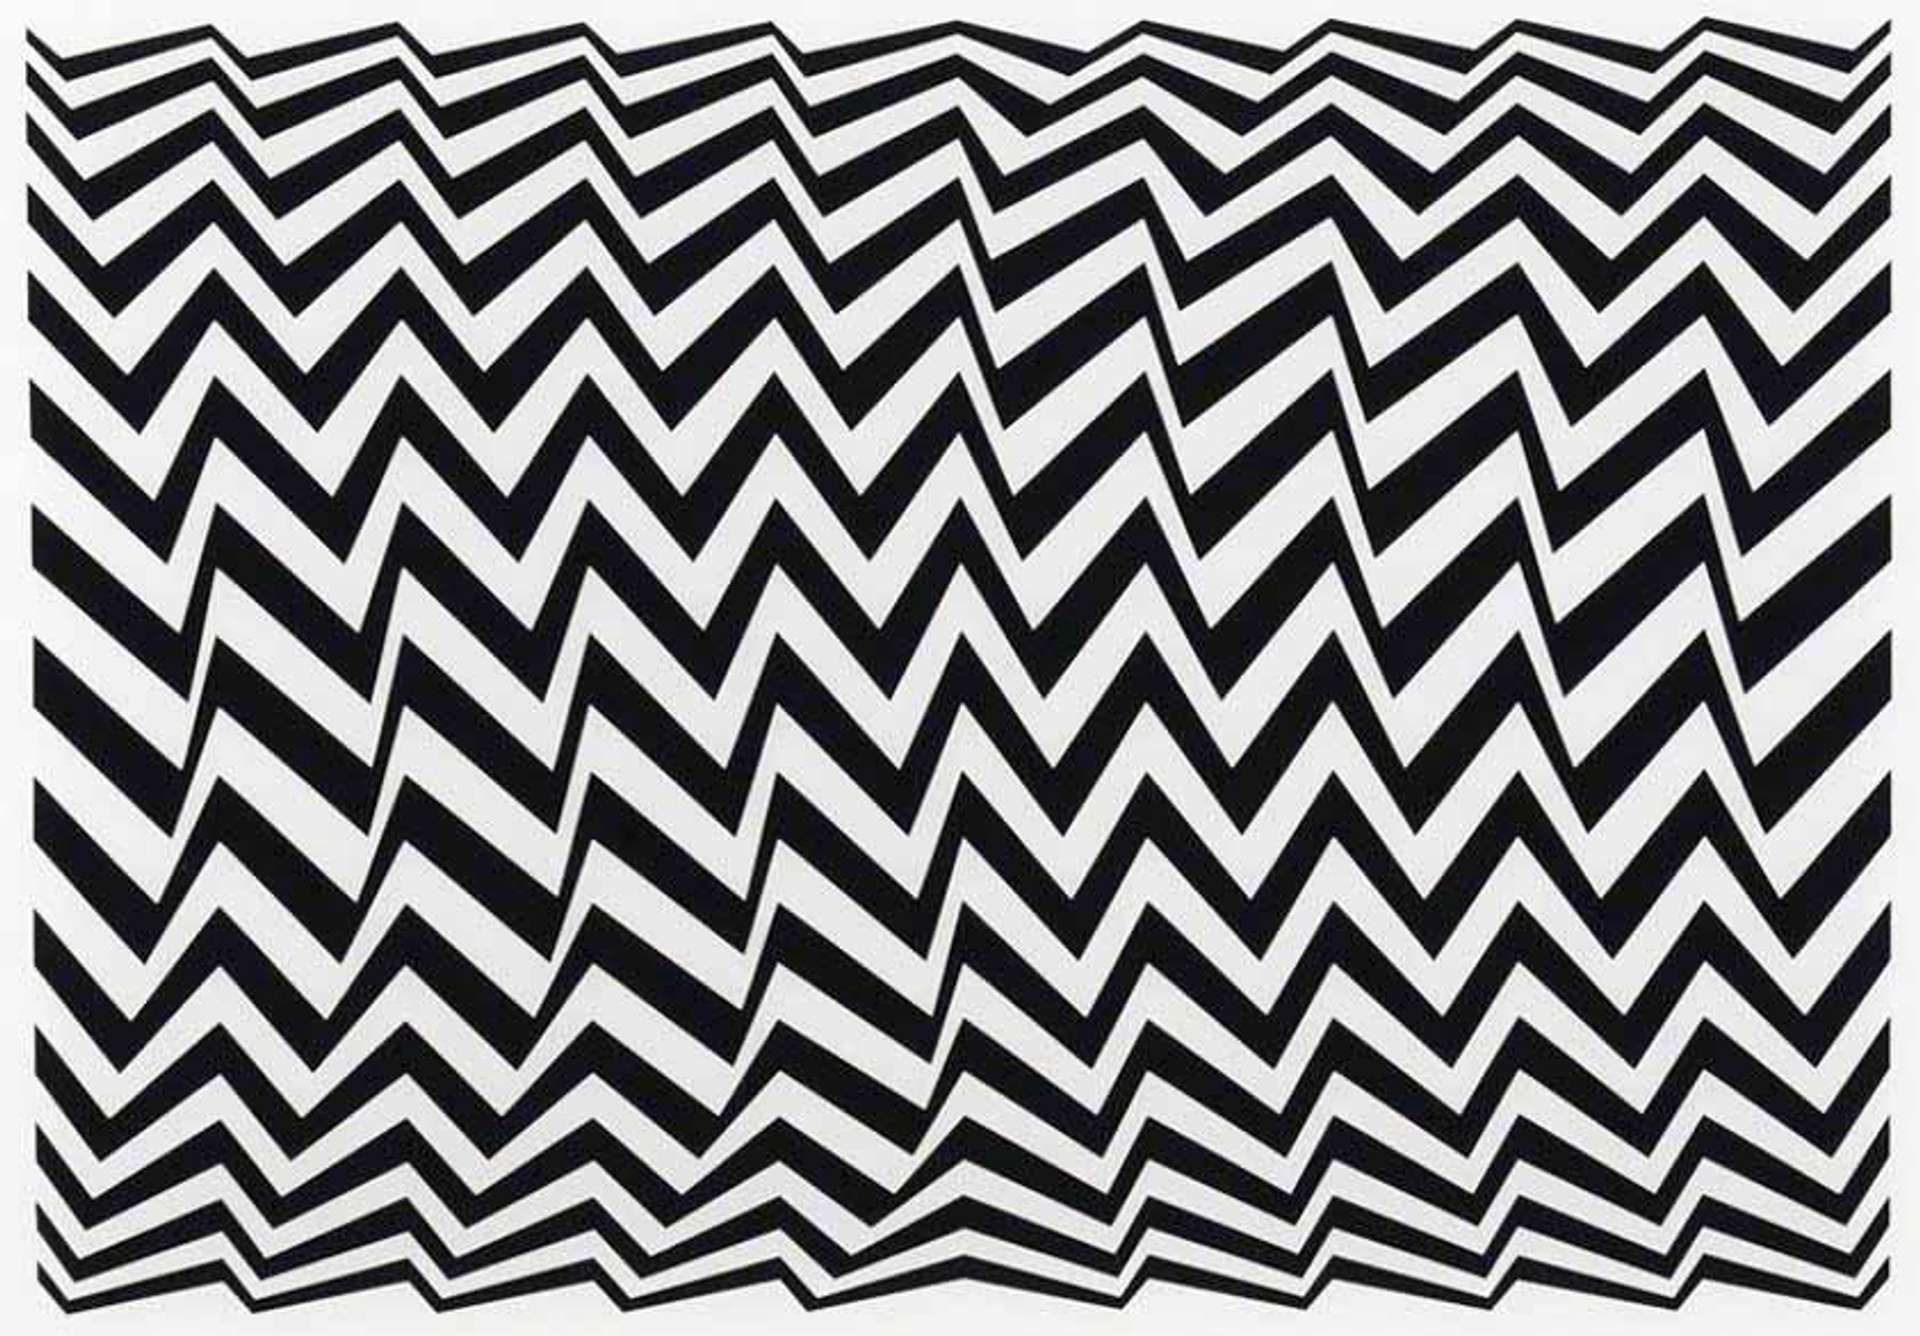 A monochromatic horizontal chevron patterned print by Bridget Riley.  